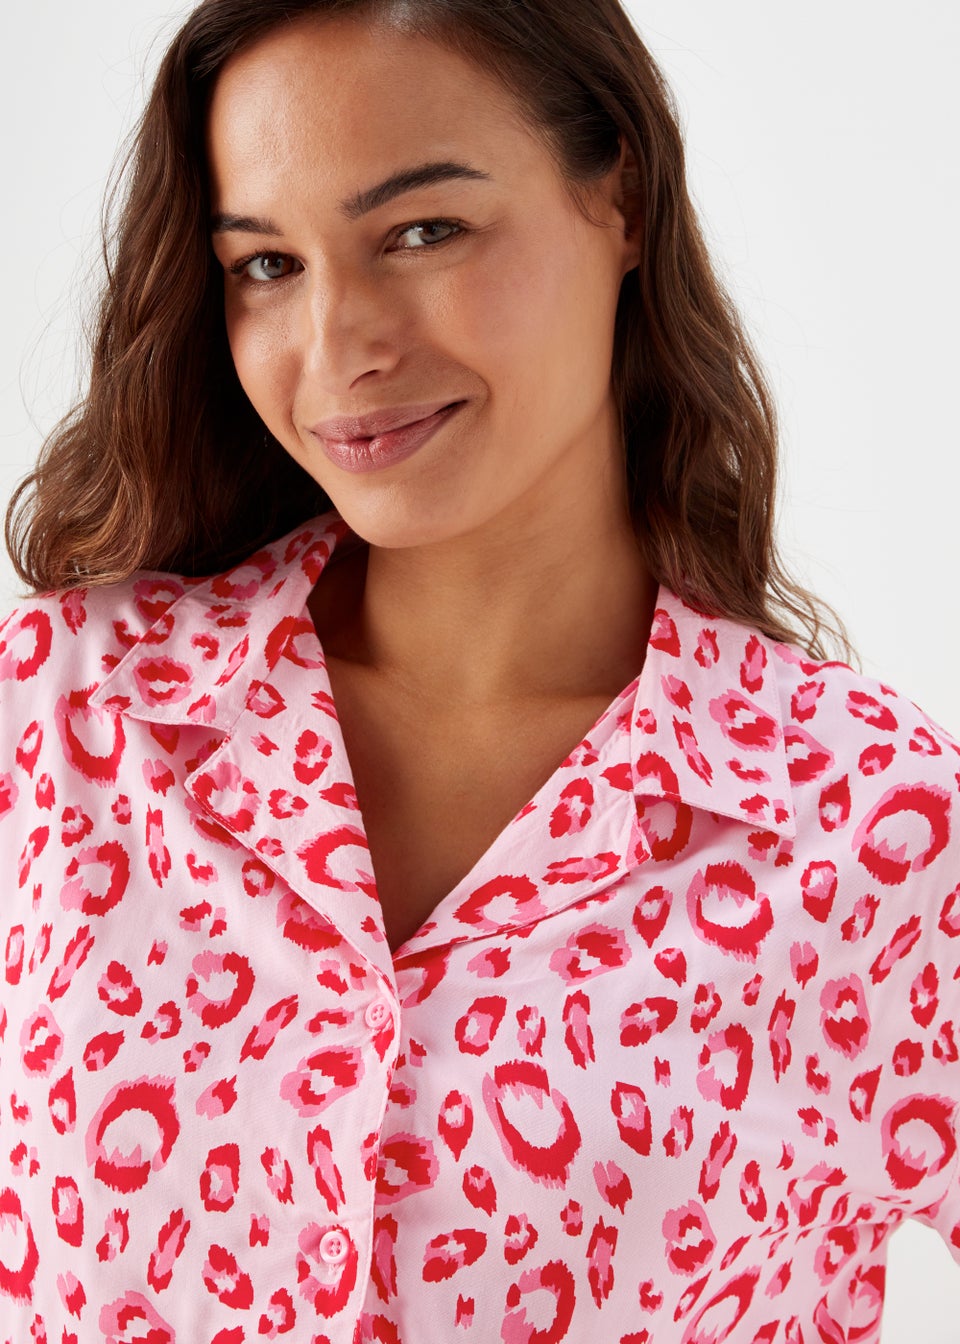 Pink Animal Print Viscose Pyjama Set